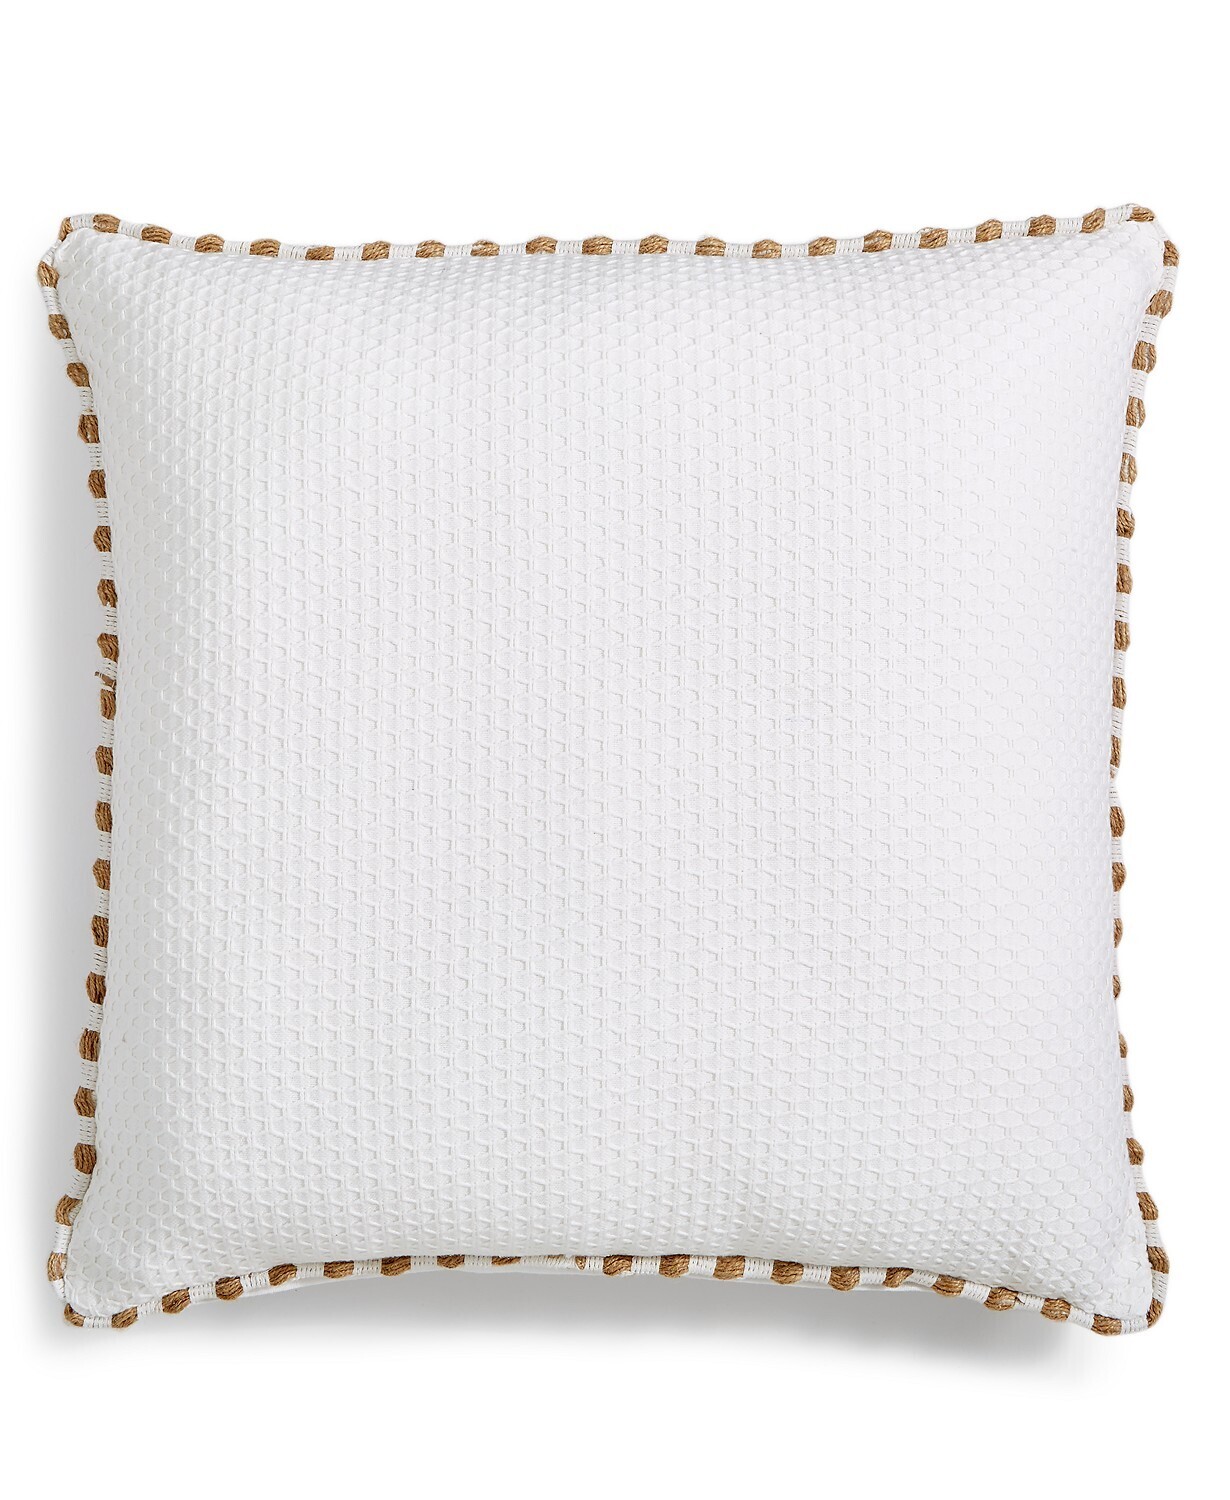 Lacourte Bailor 26" x 26" Decorative Pillow